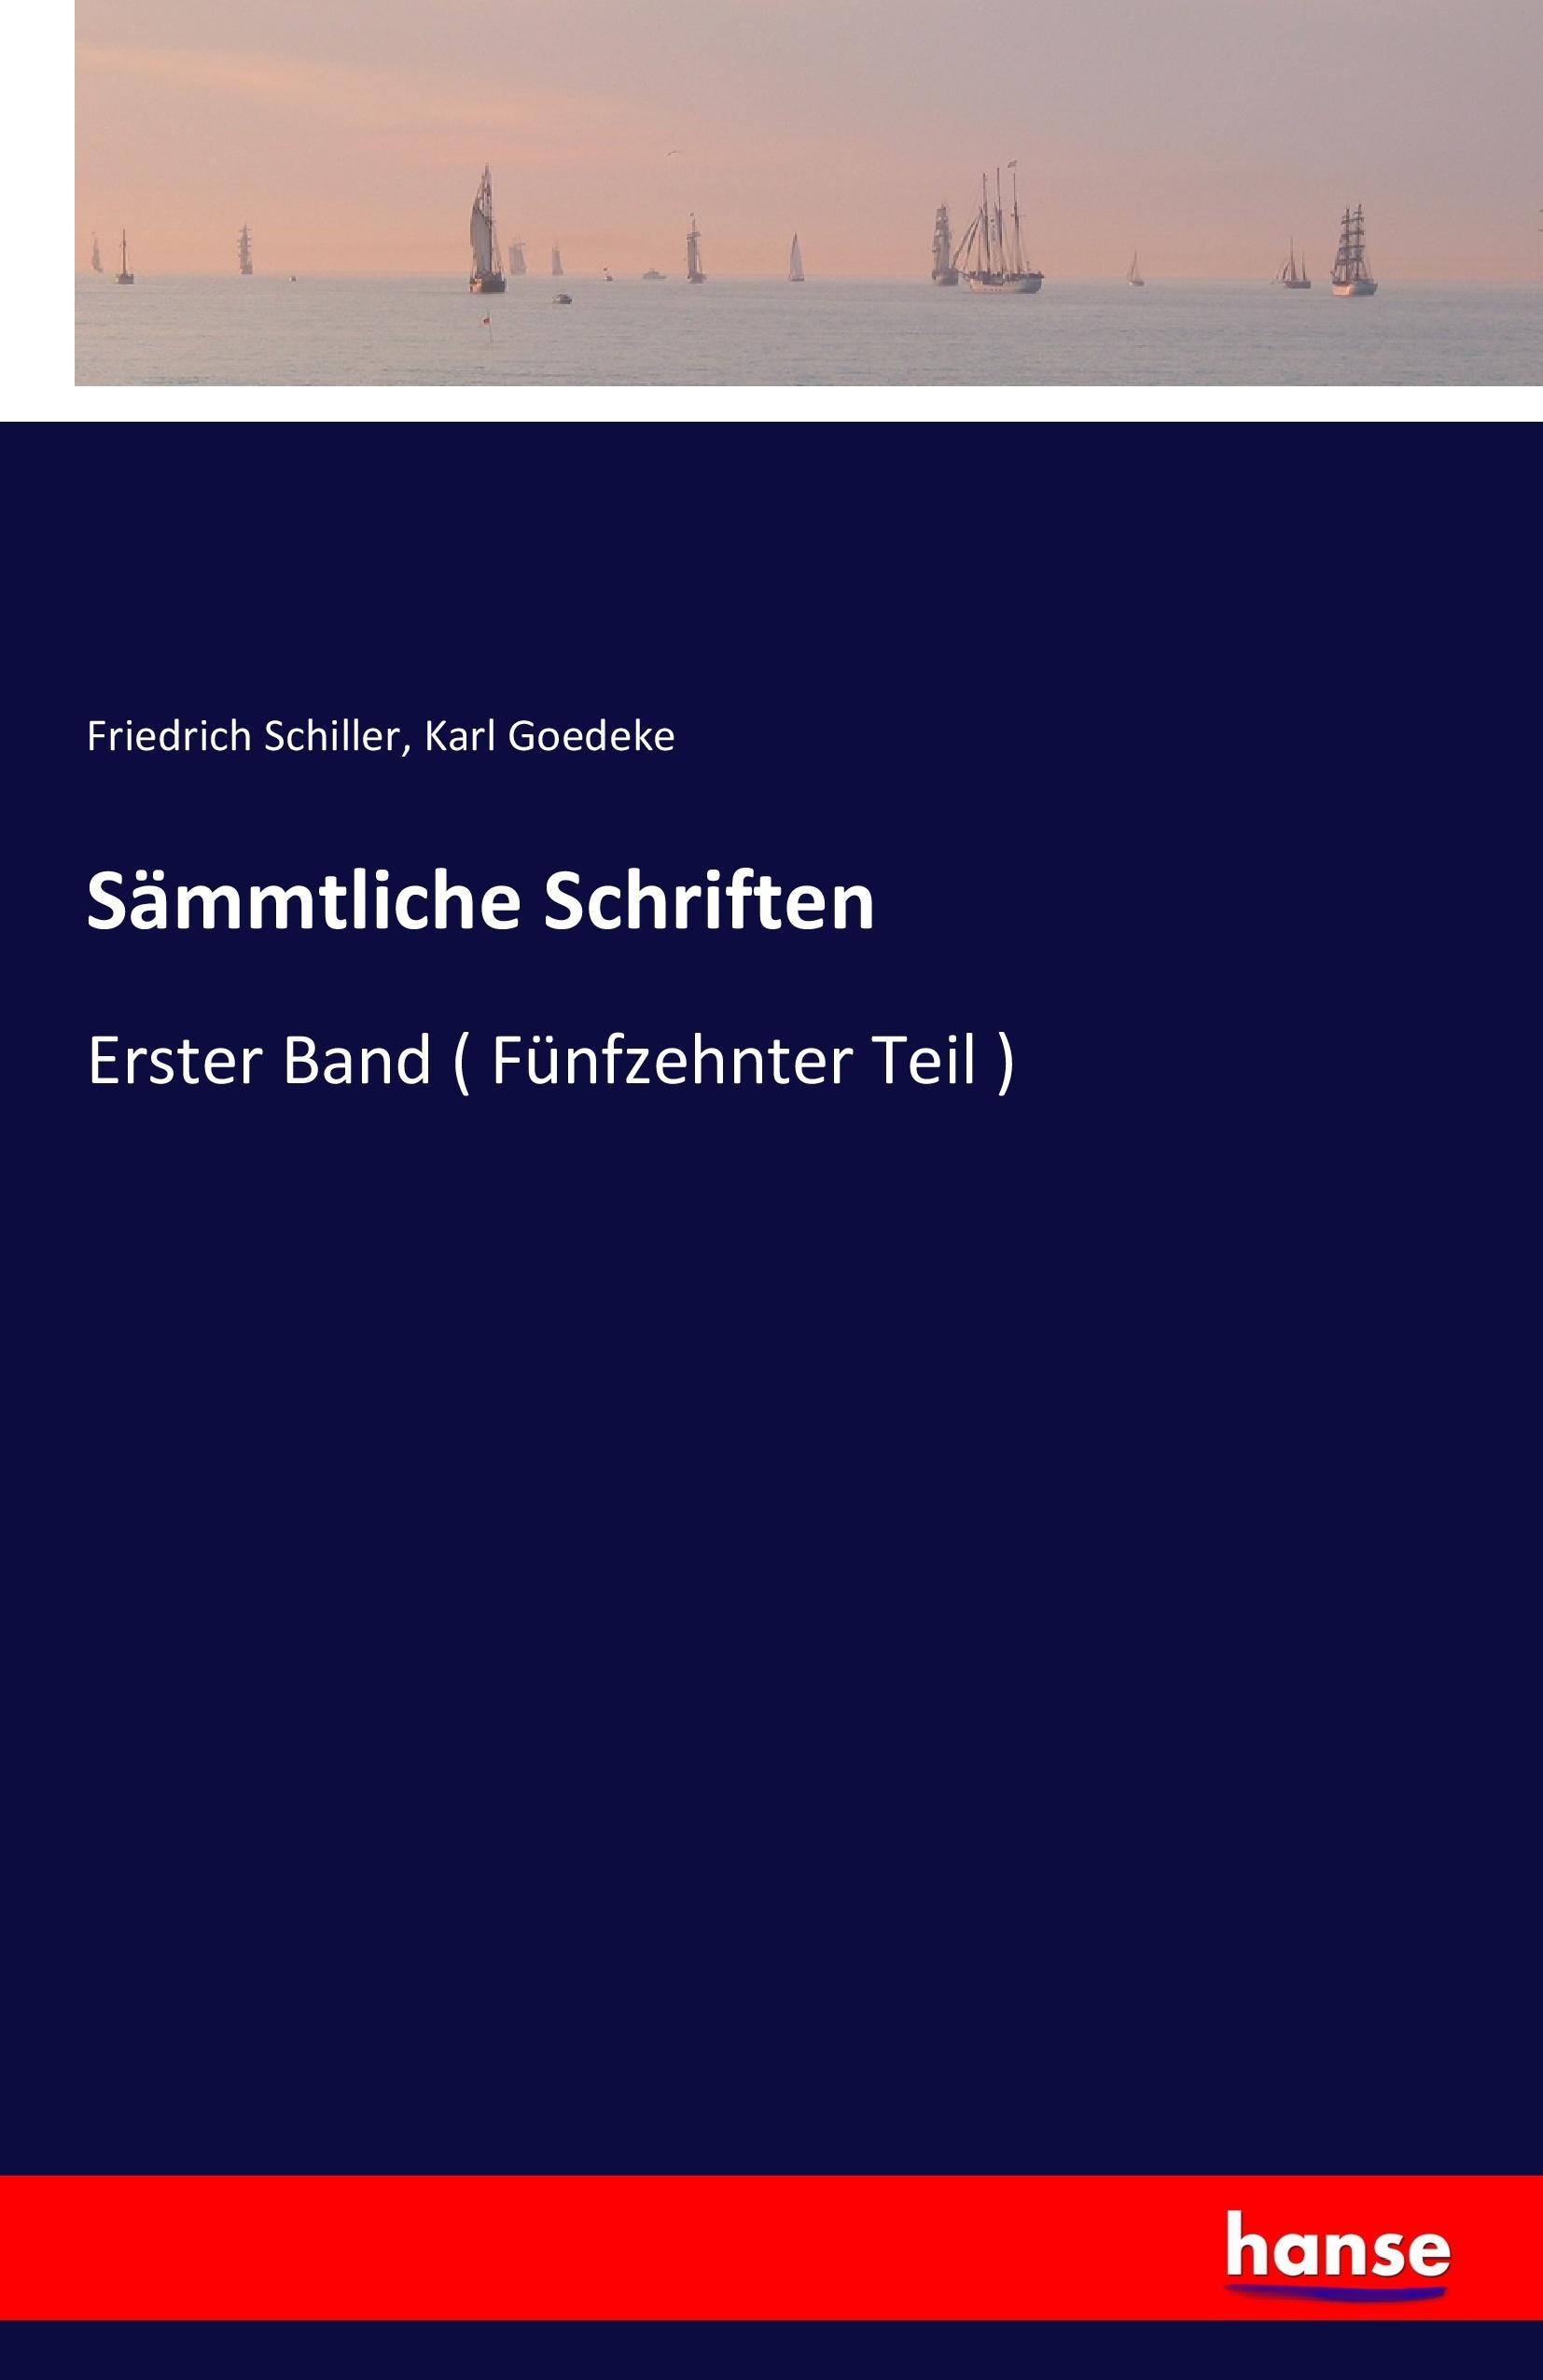 Sämmtliche Schriften | Erster Band ( Fünfzehnter Teil ) | Friedrich Schiller (u. a.) | Taschenbuch | Paperback | 432 S. | Deutsch | 2016 | hansebooks | EAN 9783741133336 - Schiller, Friedrich